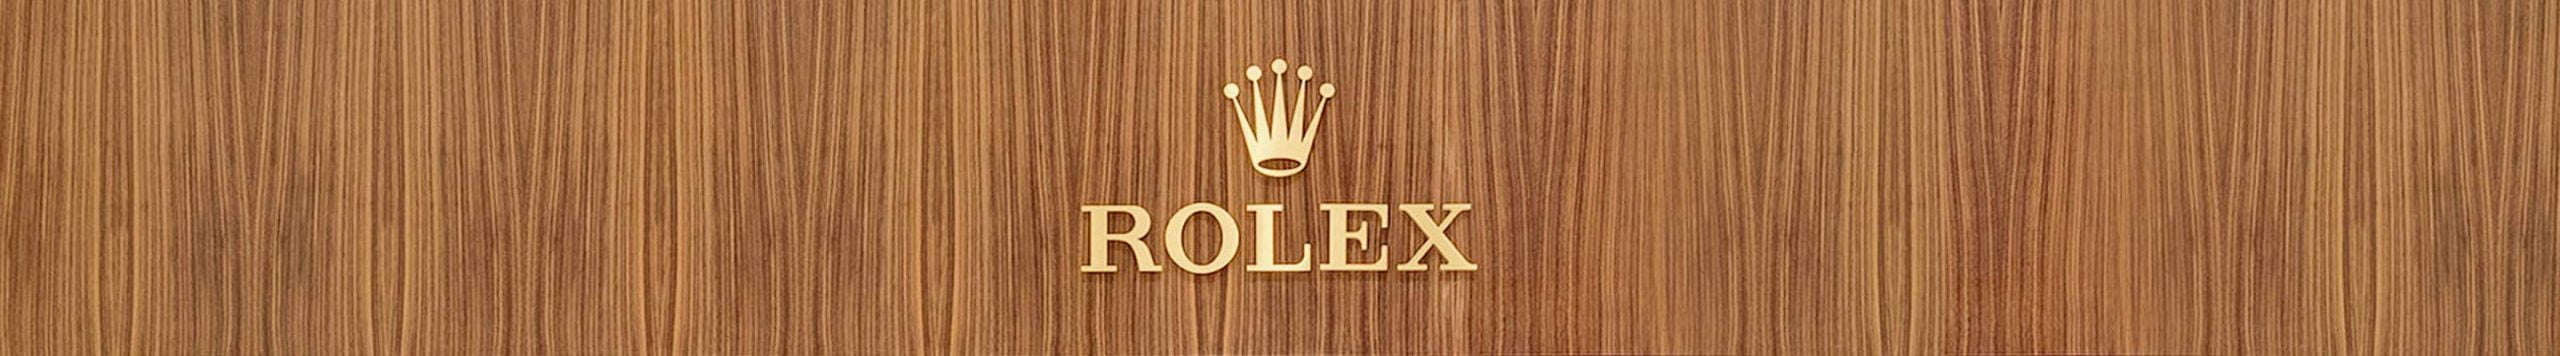 Rolex-Malaysia-Hung-Cheong-Banner-Desktop